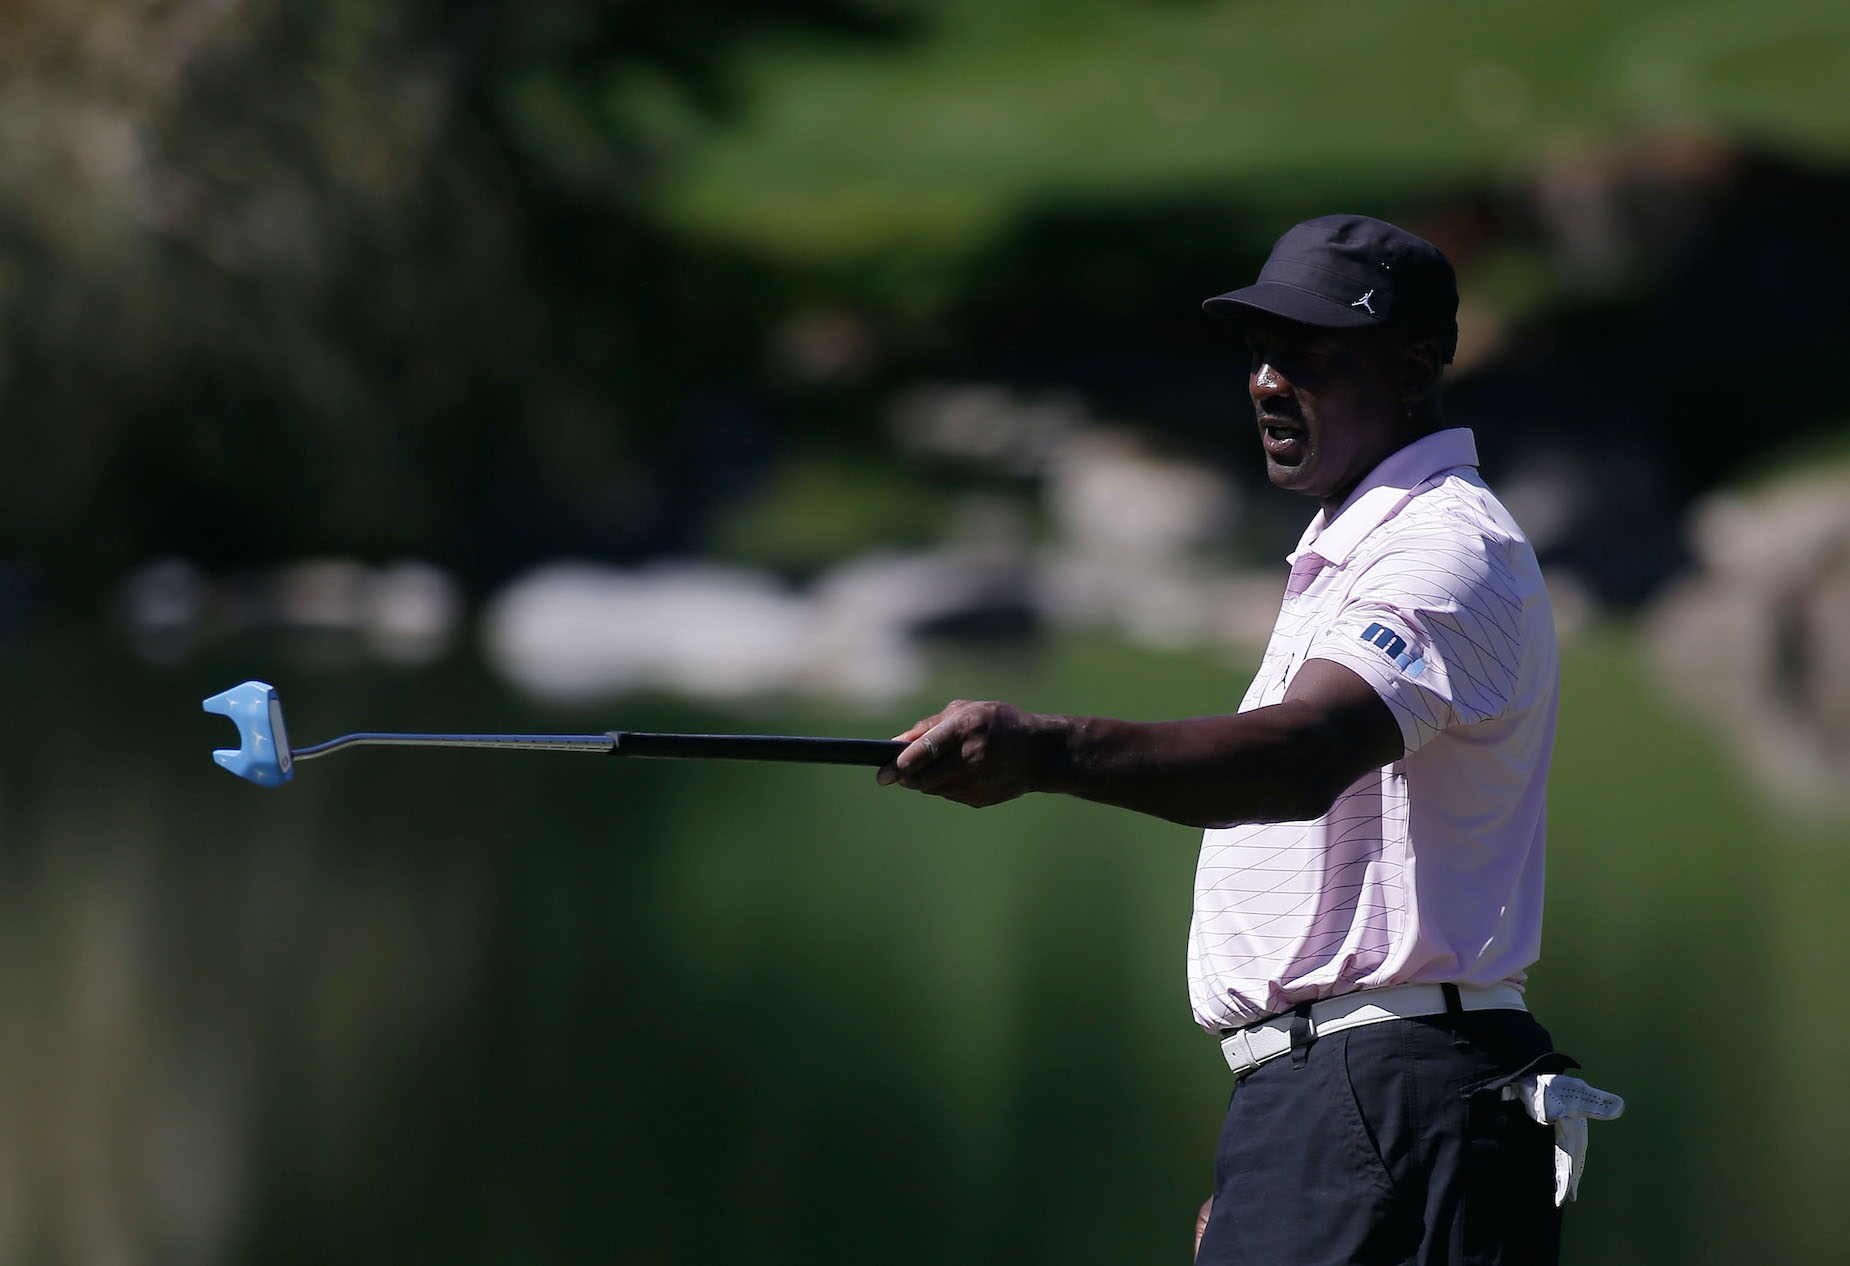 NBA legend Michael Jordan lines up a putt on the golf course.